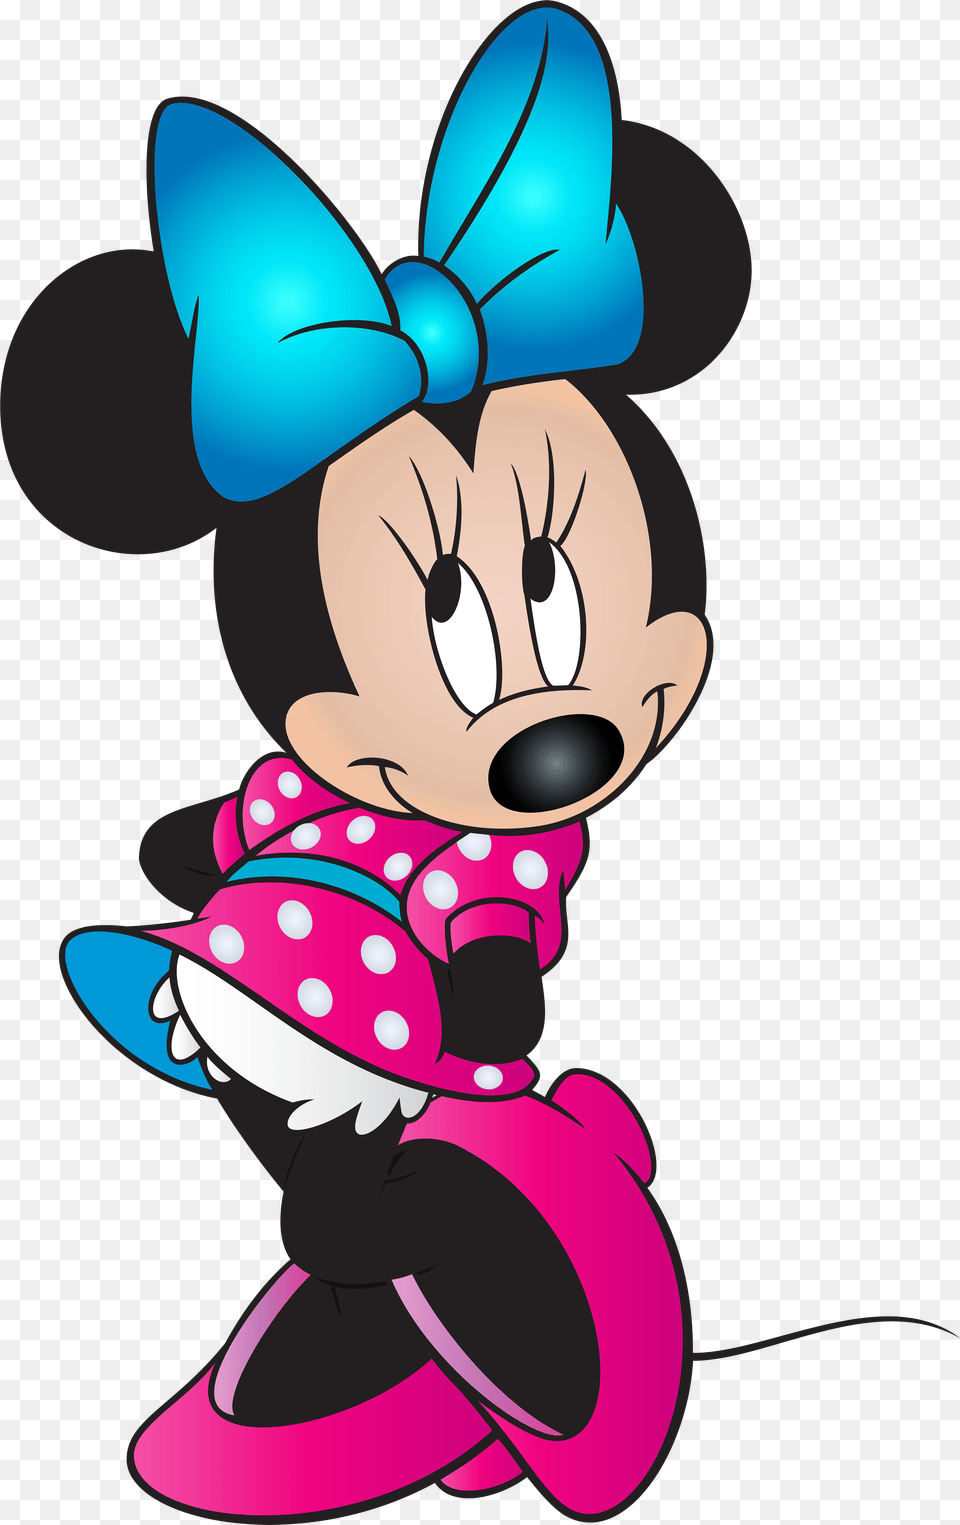 Imagenes De Minnie Mouse, Cartoon, Book, Comics, Publication Png